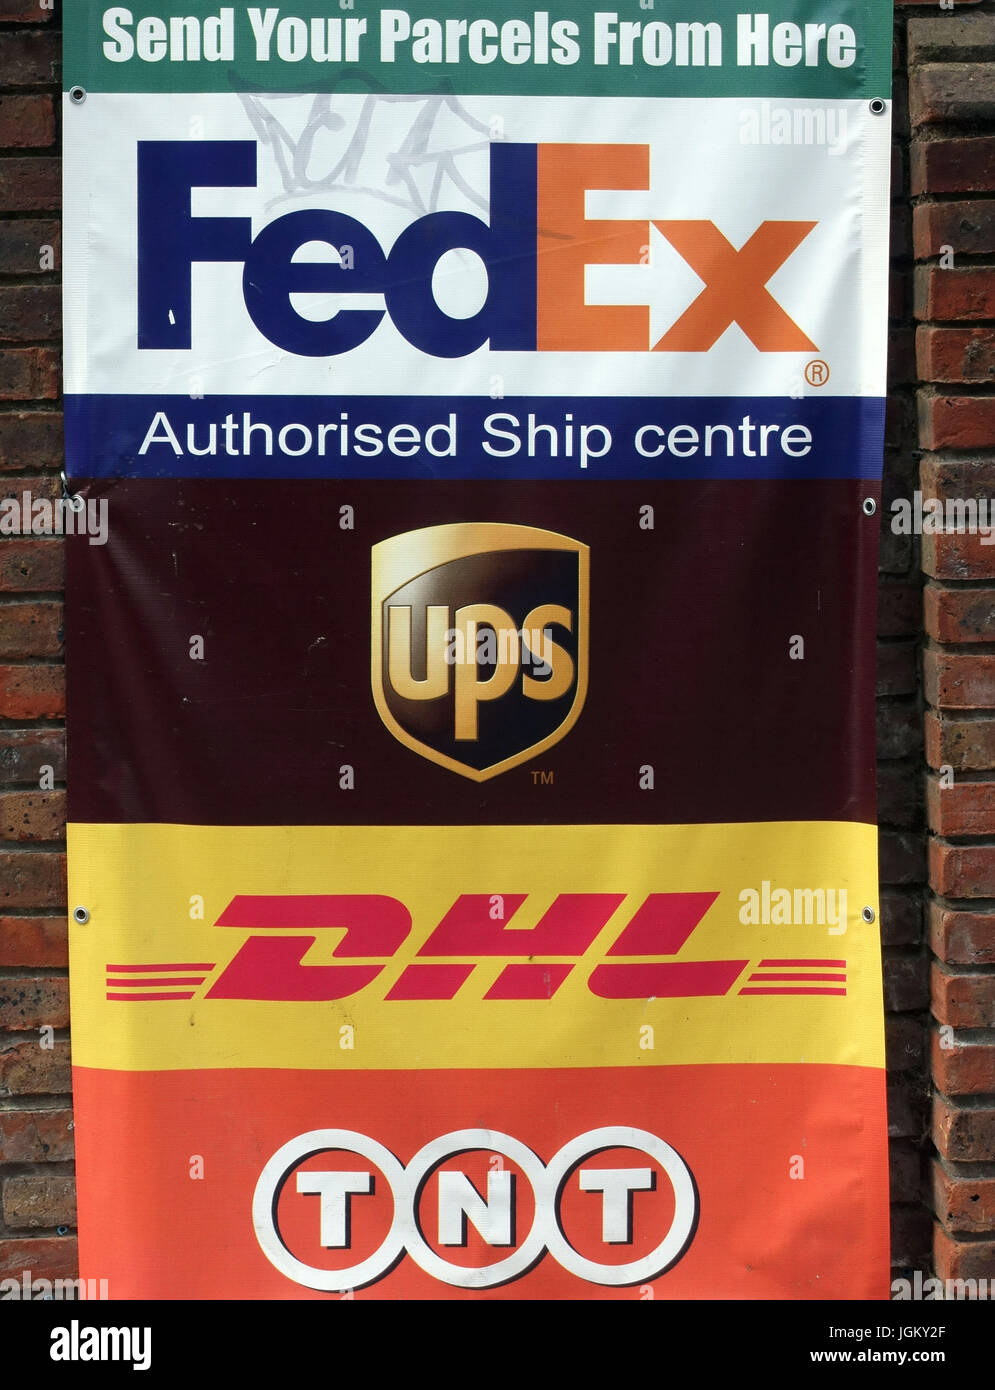 Les logos des sociétés de messagerie à l'extérieur de Mail Boxes Etc voyage centre à Londres Banque D'Images